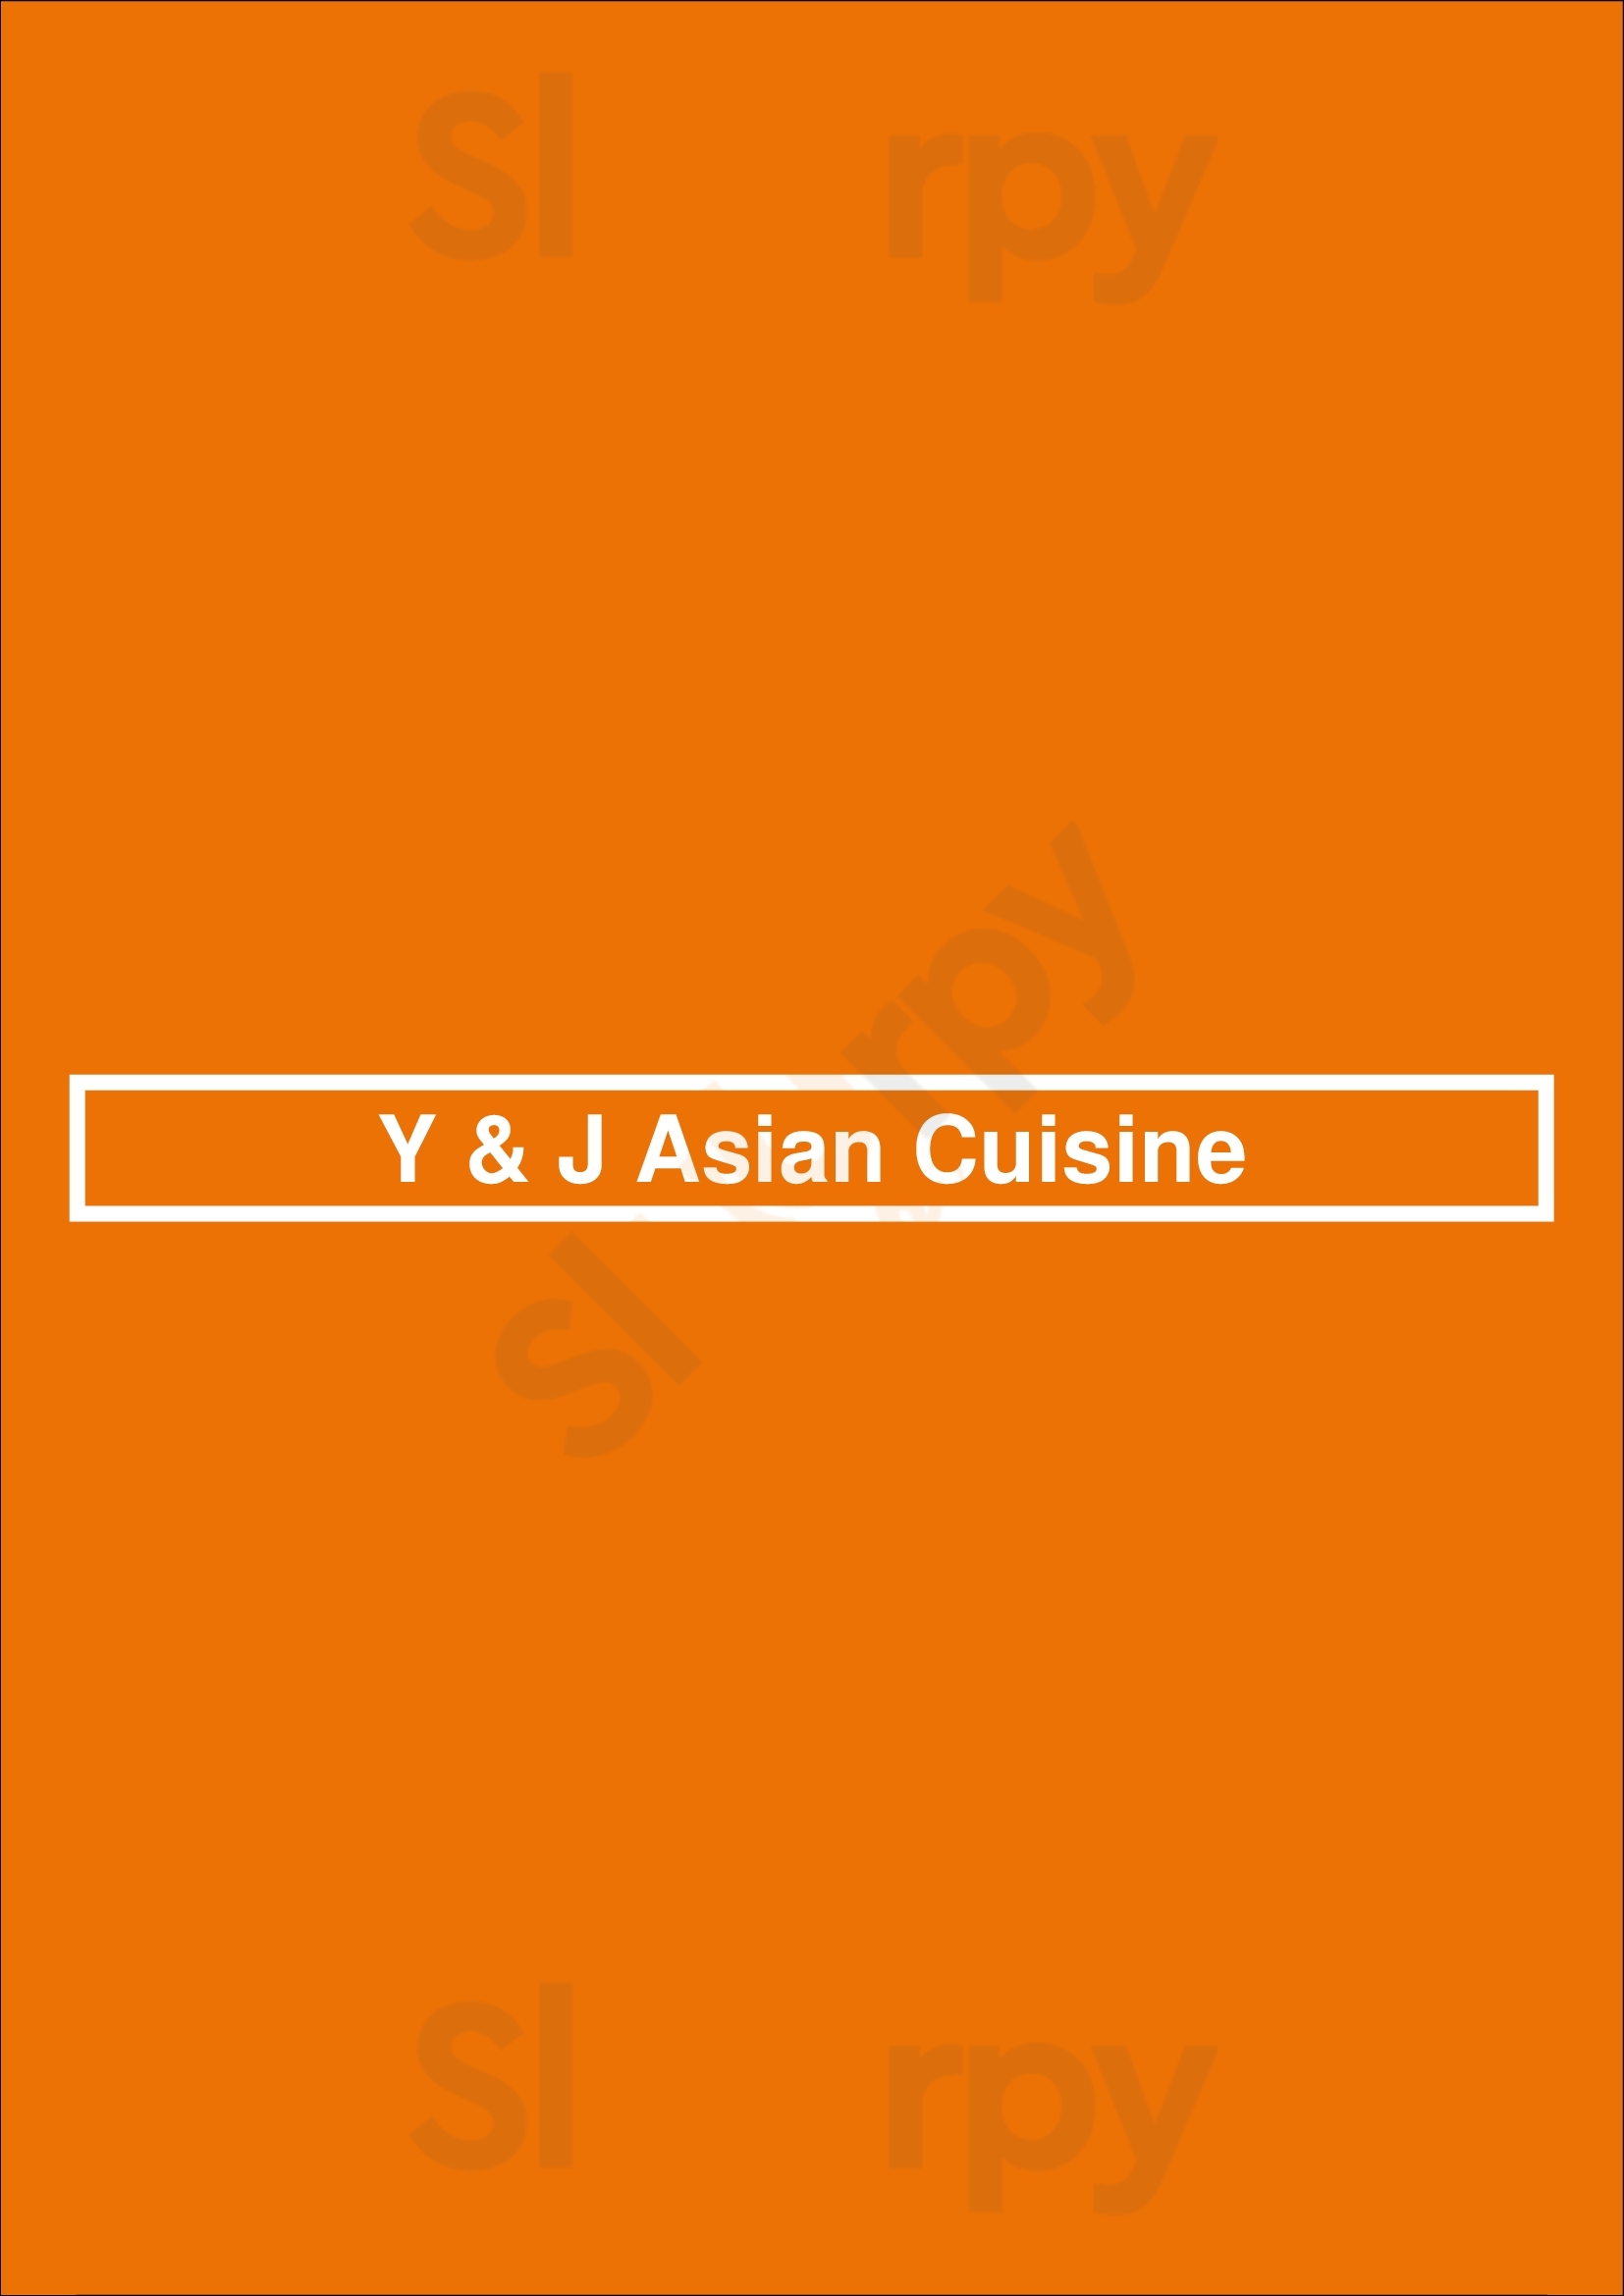 Y & J Asian Cuisine Westminster Menu - 1